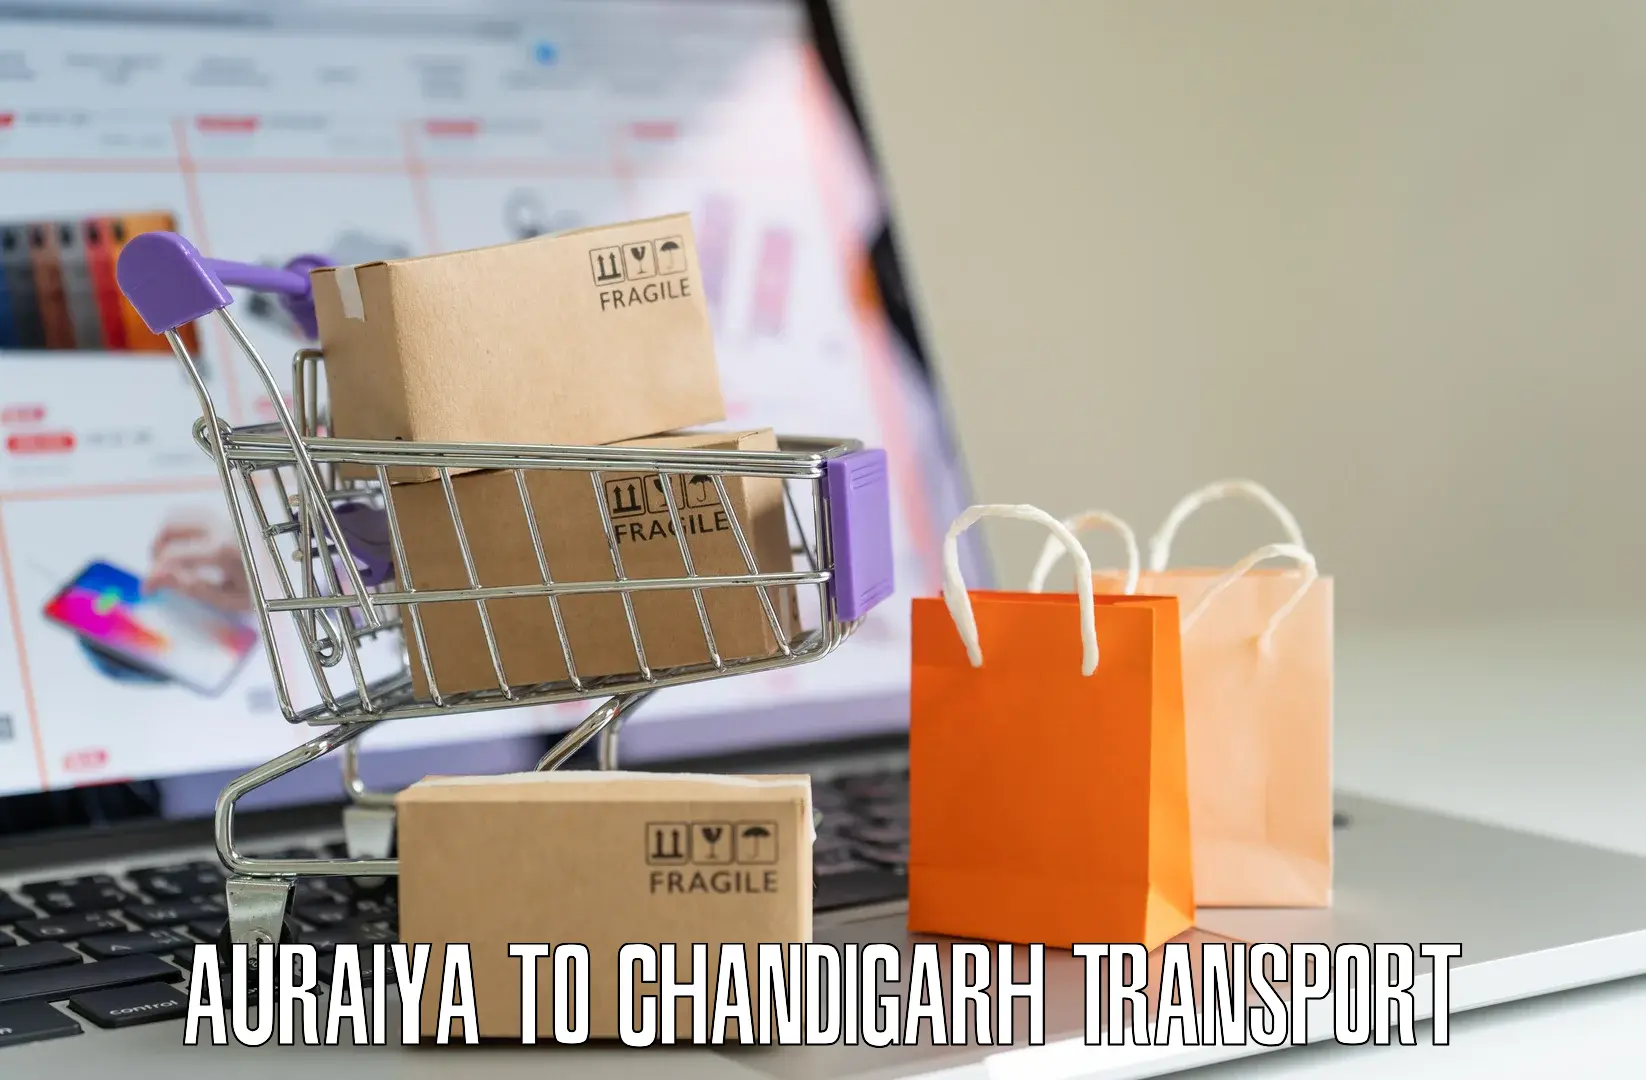 Online transport service in Auraiya to Chandigarh